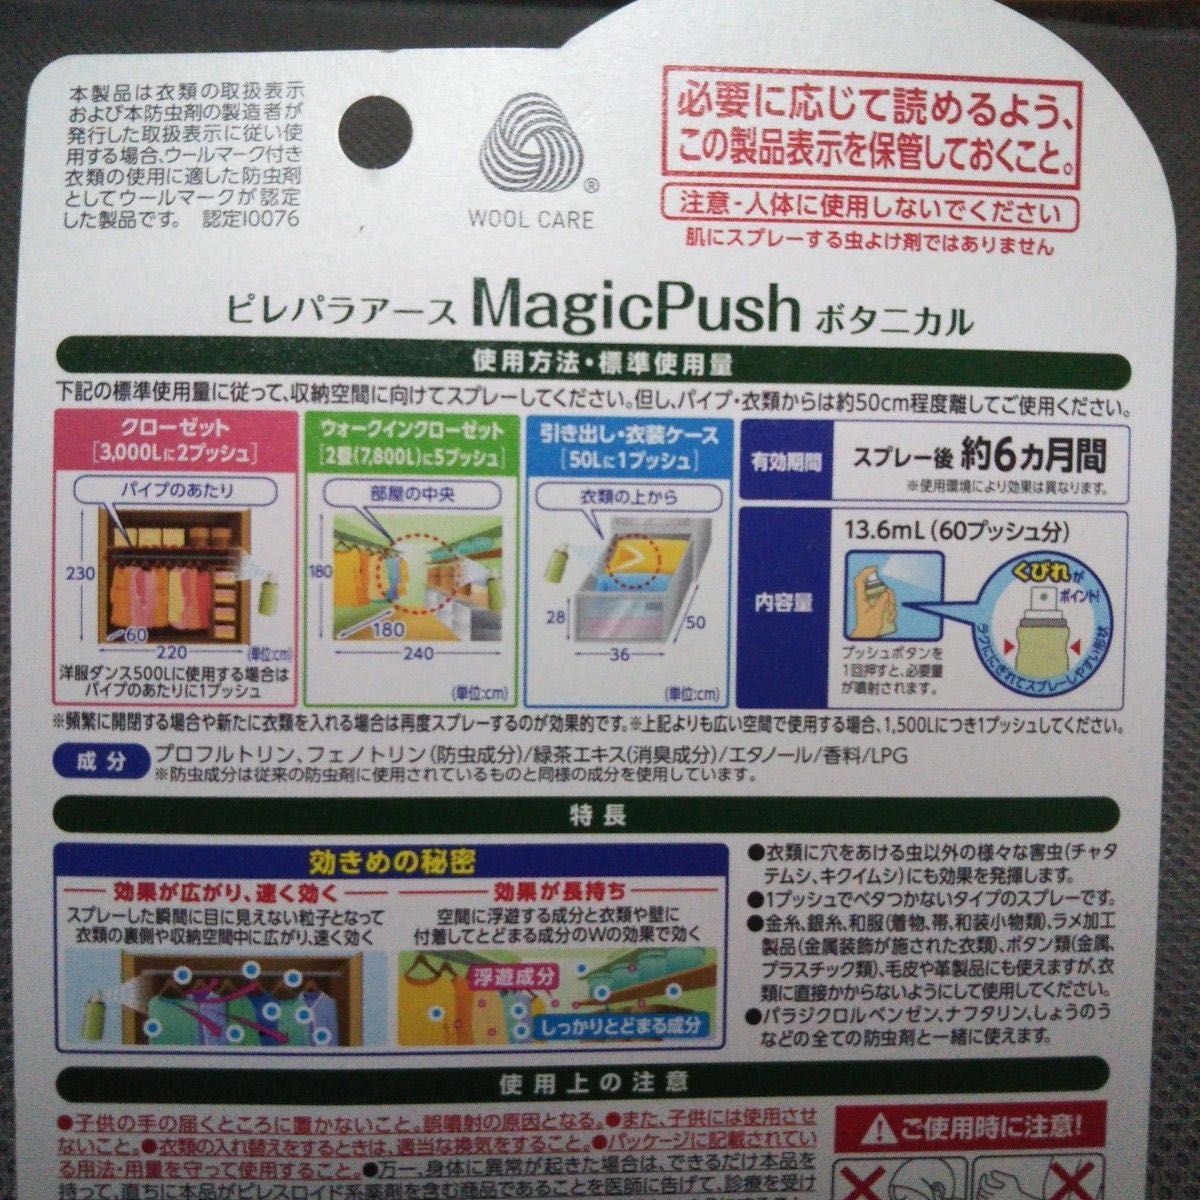 アース製薬 ピレパラアース Magic Push マジックプッシュ ボタニカル 防虫剤 6個